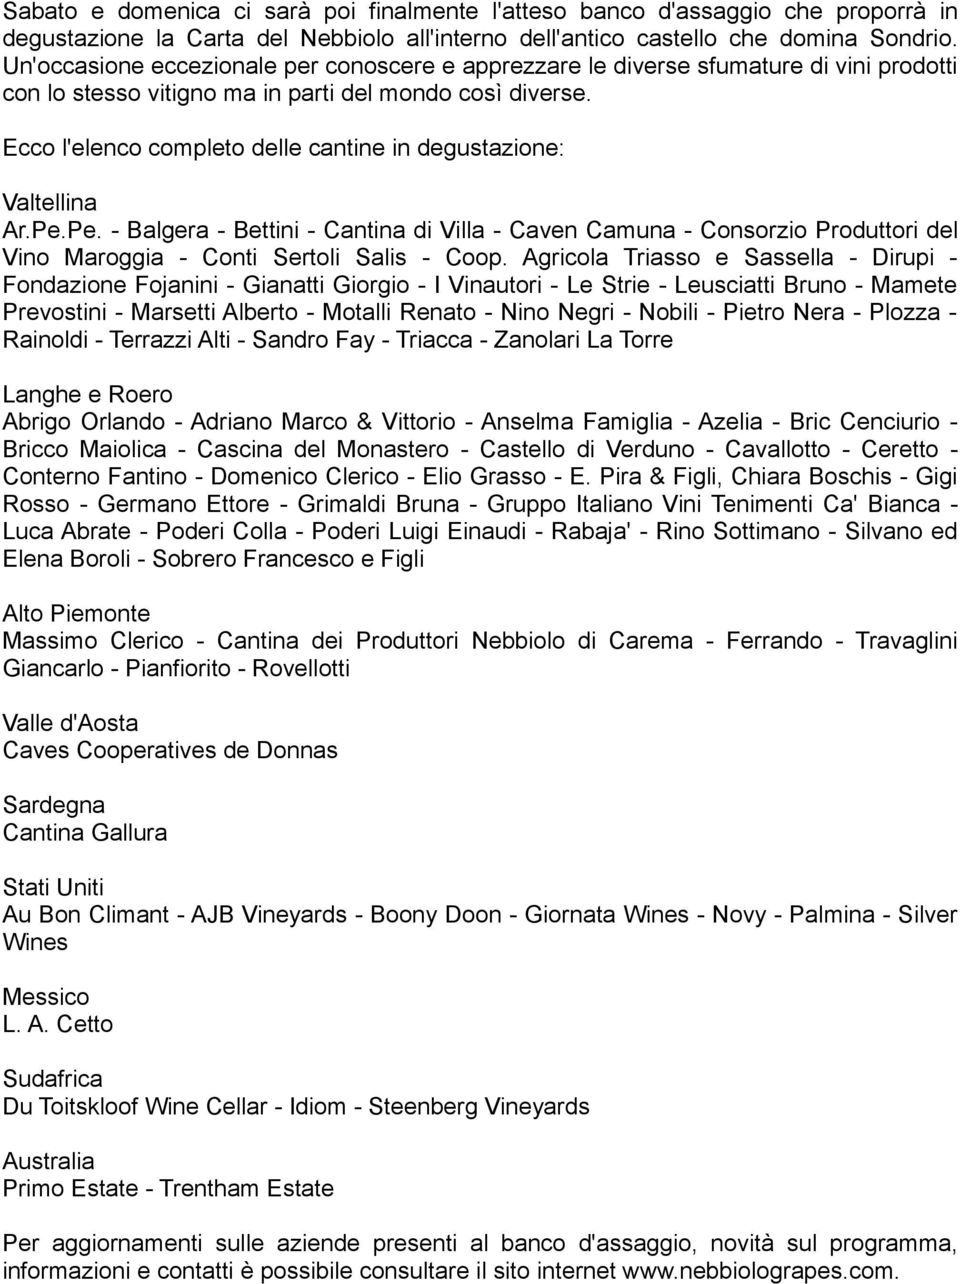 Ecco l'elenco completo delle cantine in degustazione: Valtellina Ar.Pe.Pe. - Balgera - Bettini - Cantina di Villa - Caven Camuna - Consorzio Produttori del Vino Maroggia - Conti Sertoli Salis - Coop.